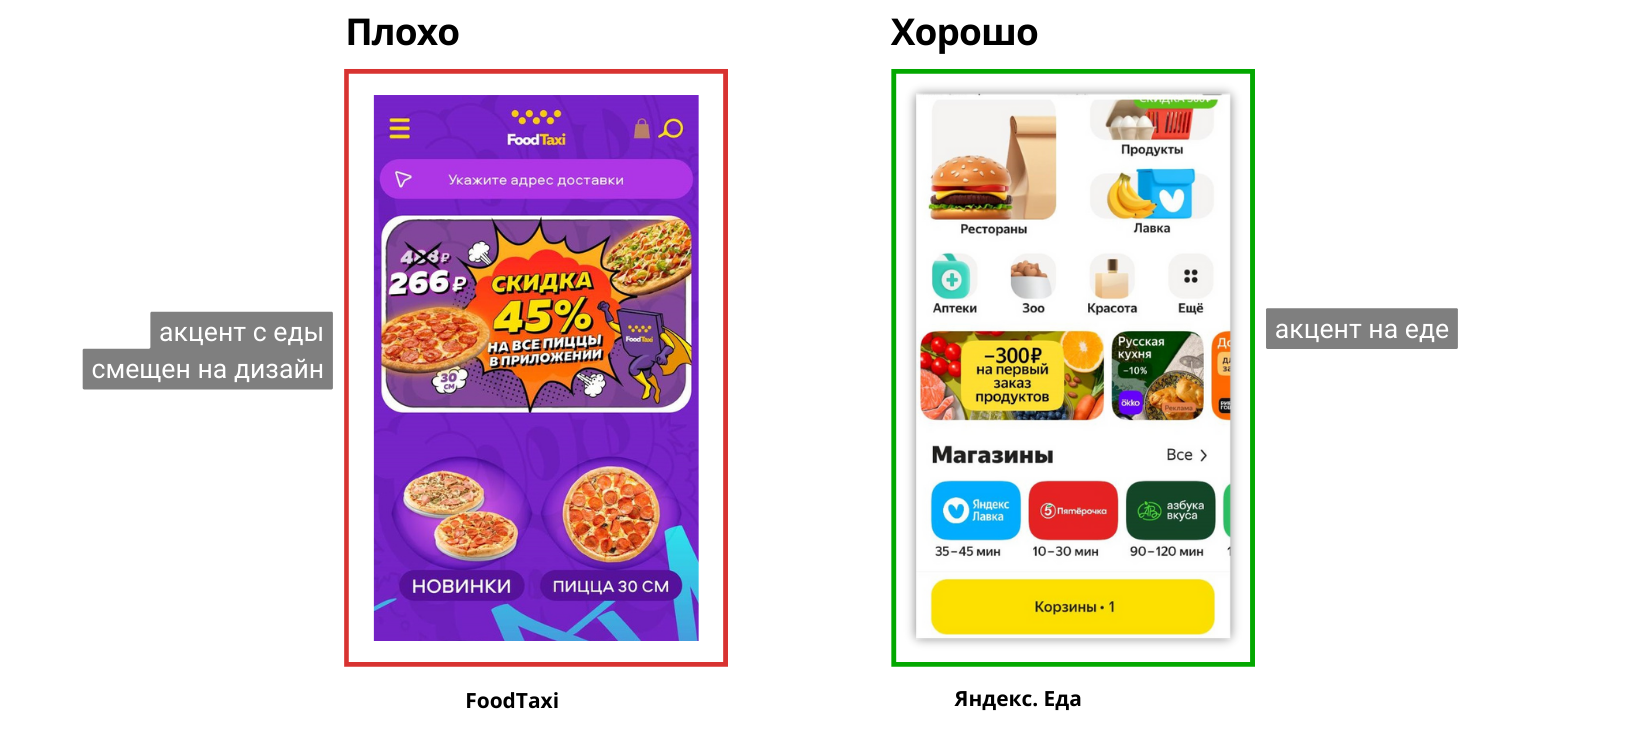 В Яндексе фантазия под контролем. Яркие акценты есть, но на еде.  